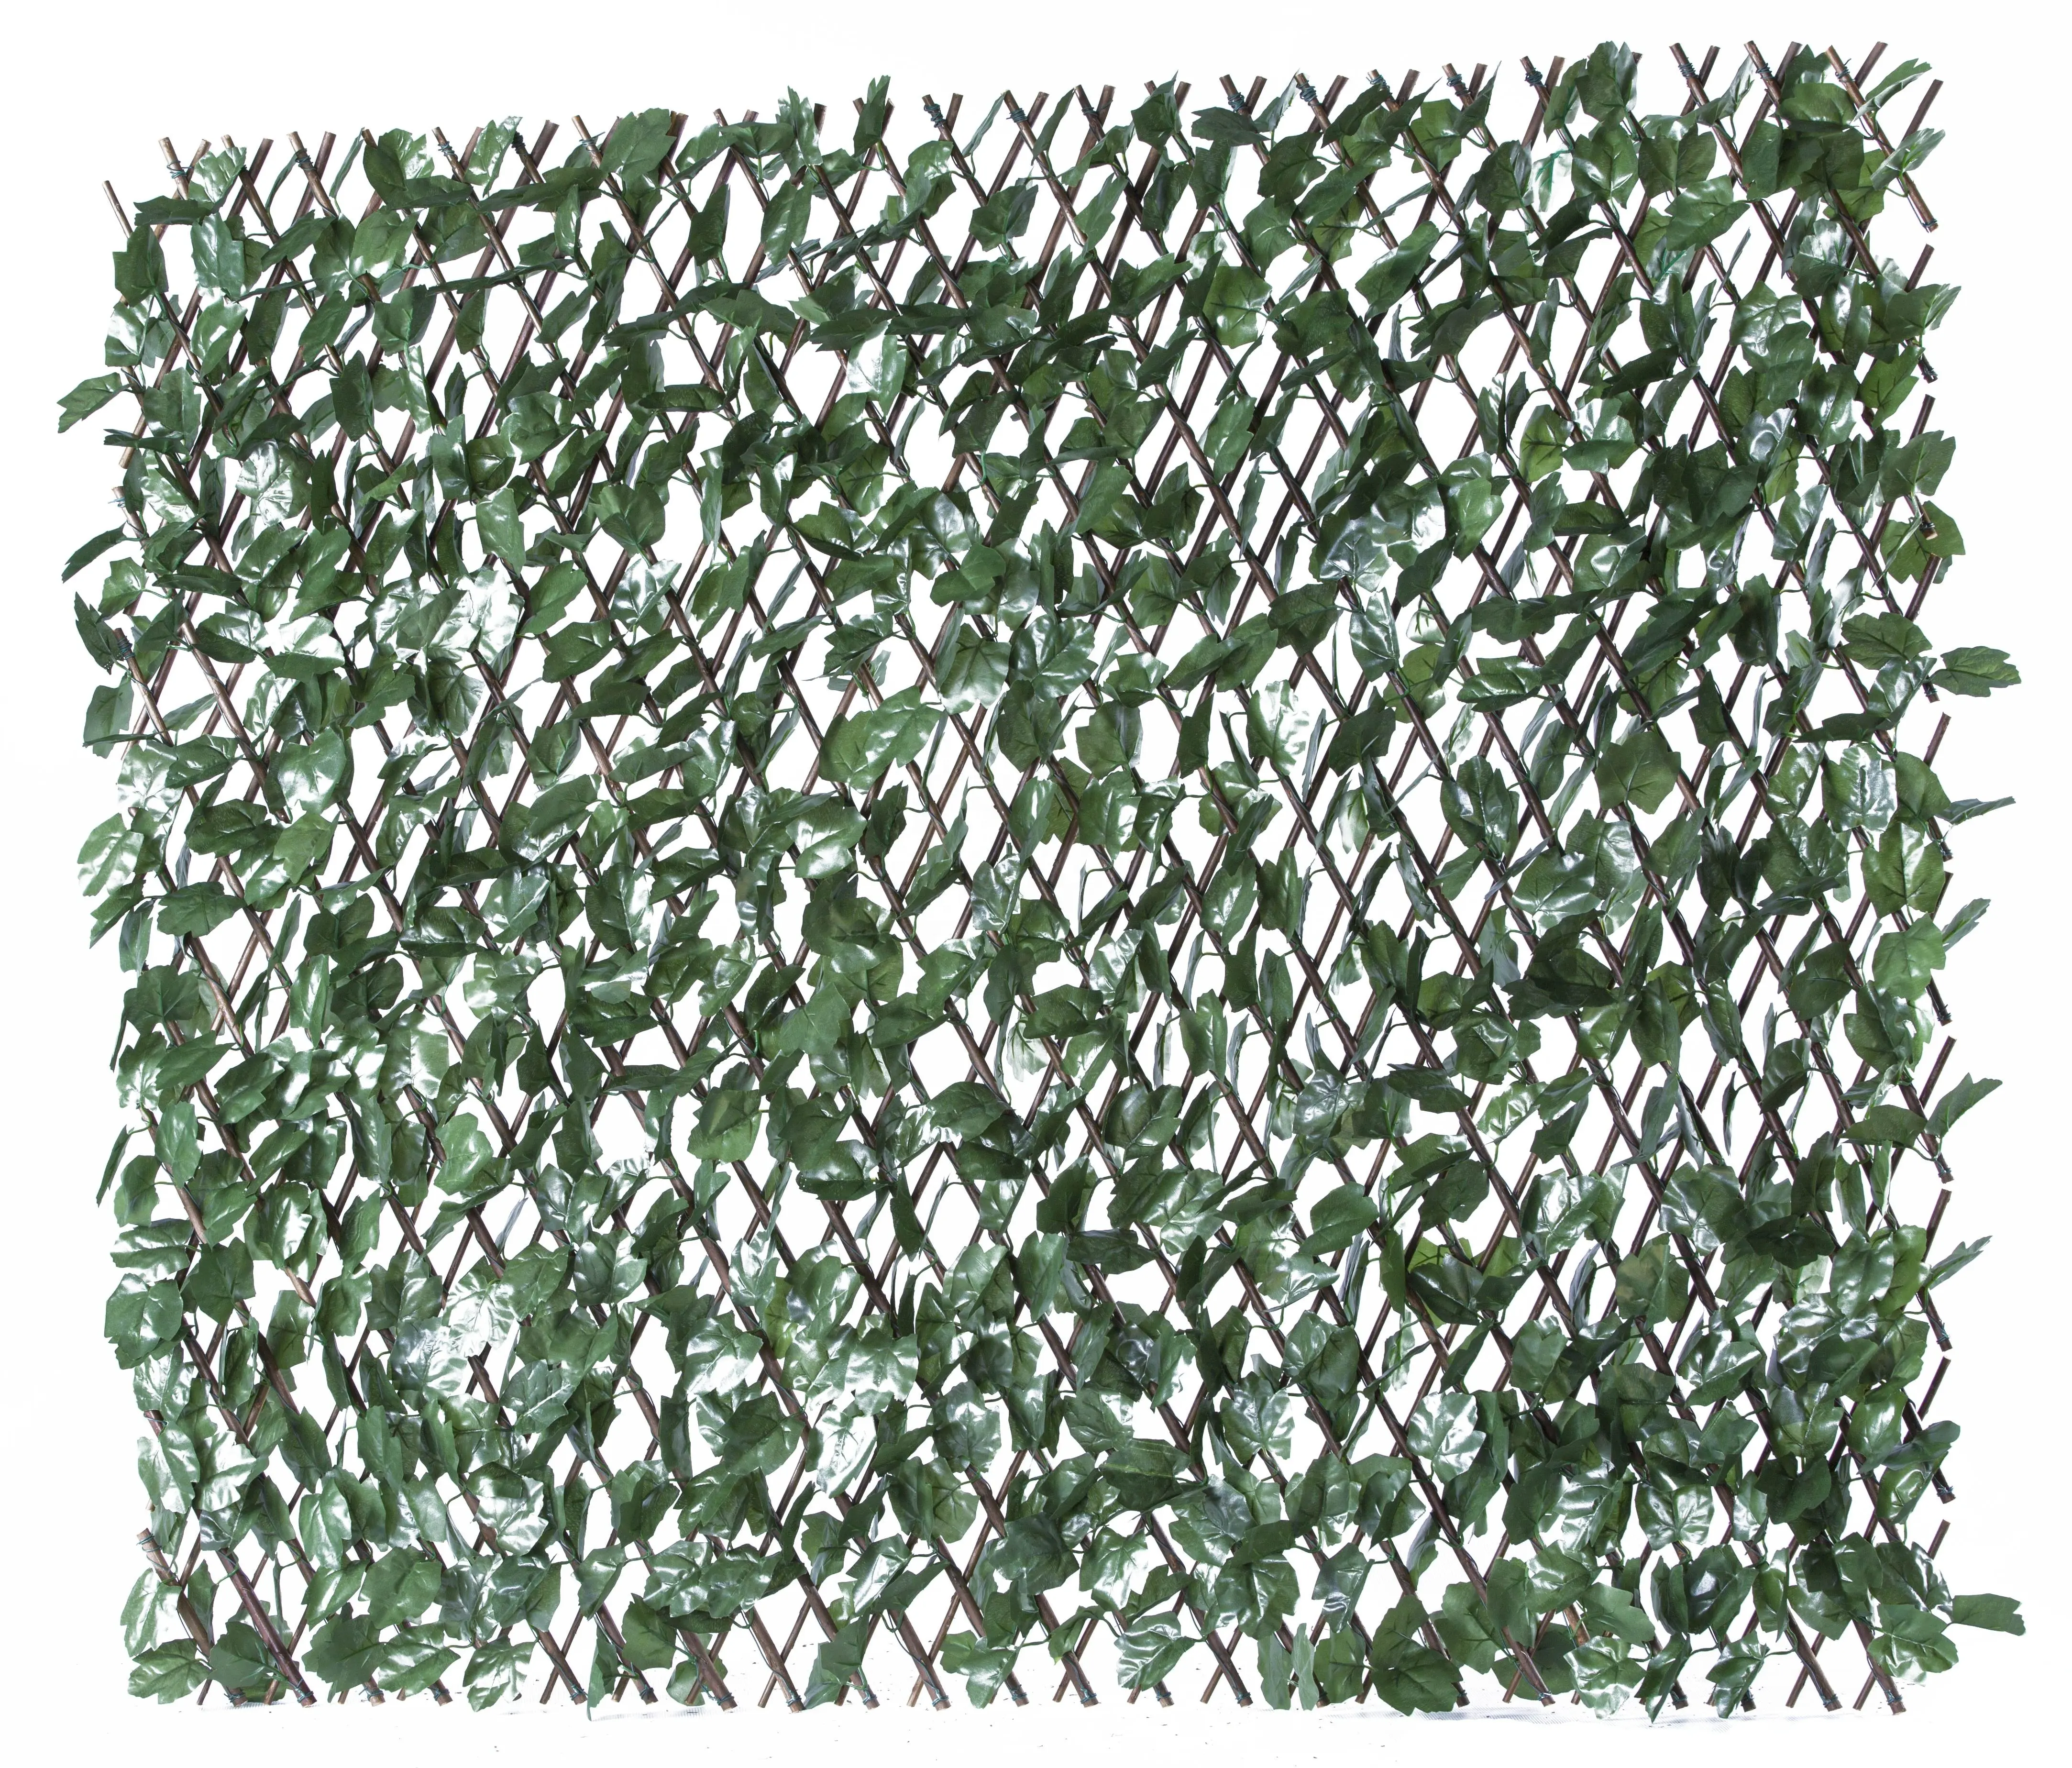 MZ186002 ampliable de Ivy de privacidad de la pared de plantas para la escuela a casa del parque